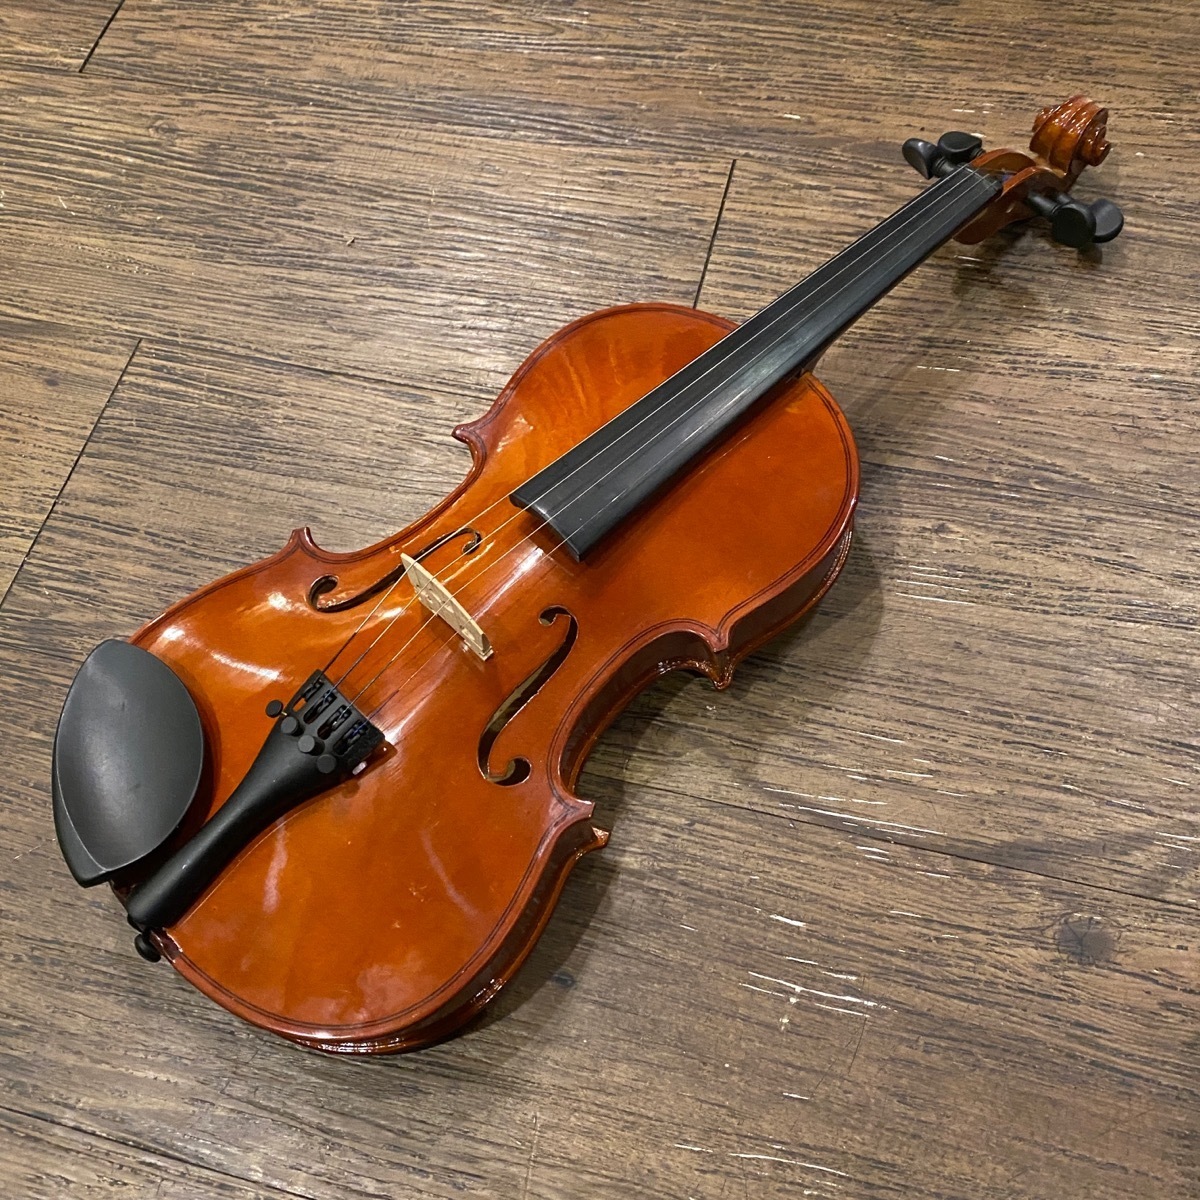 No Brand 4/4 String Instrument バイオリン -GrunSound-x140-